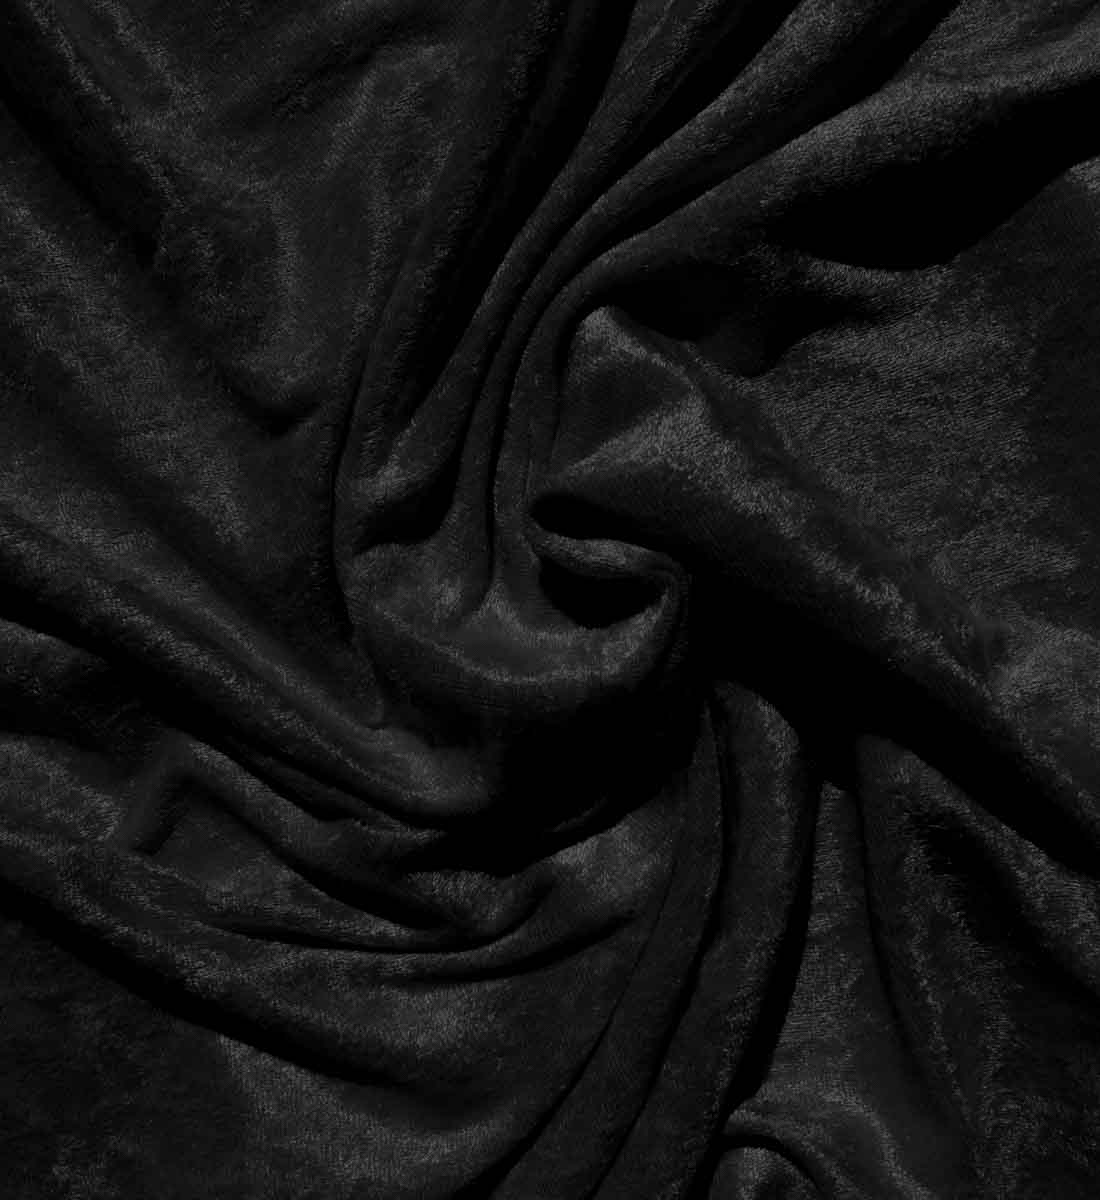 Black velvet fabric stock photo containing black and velvet